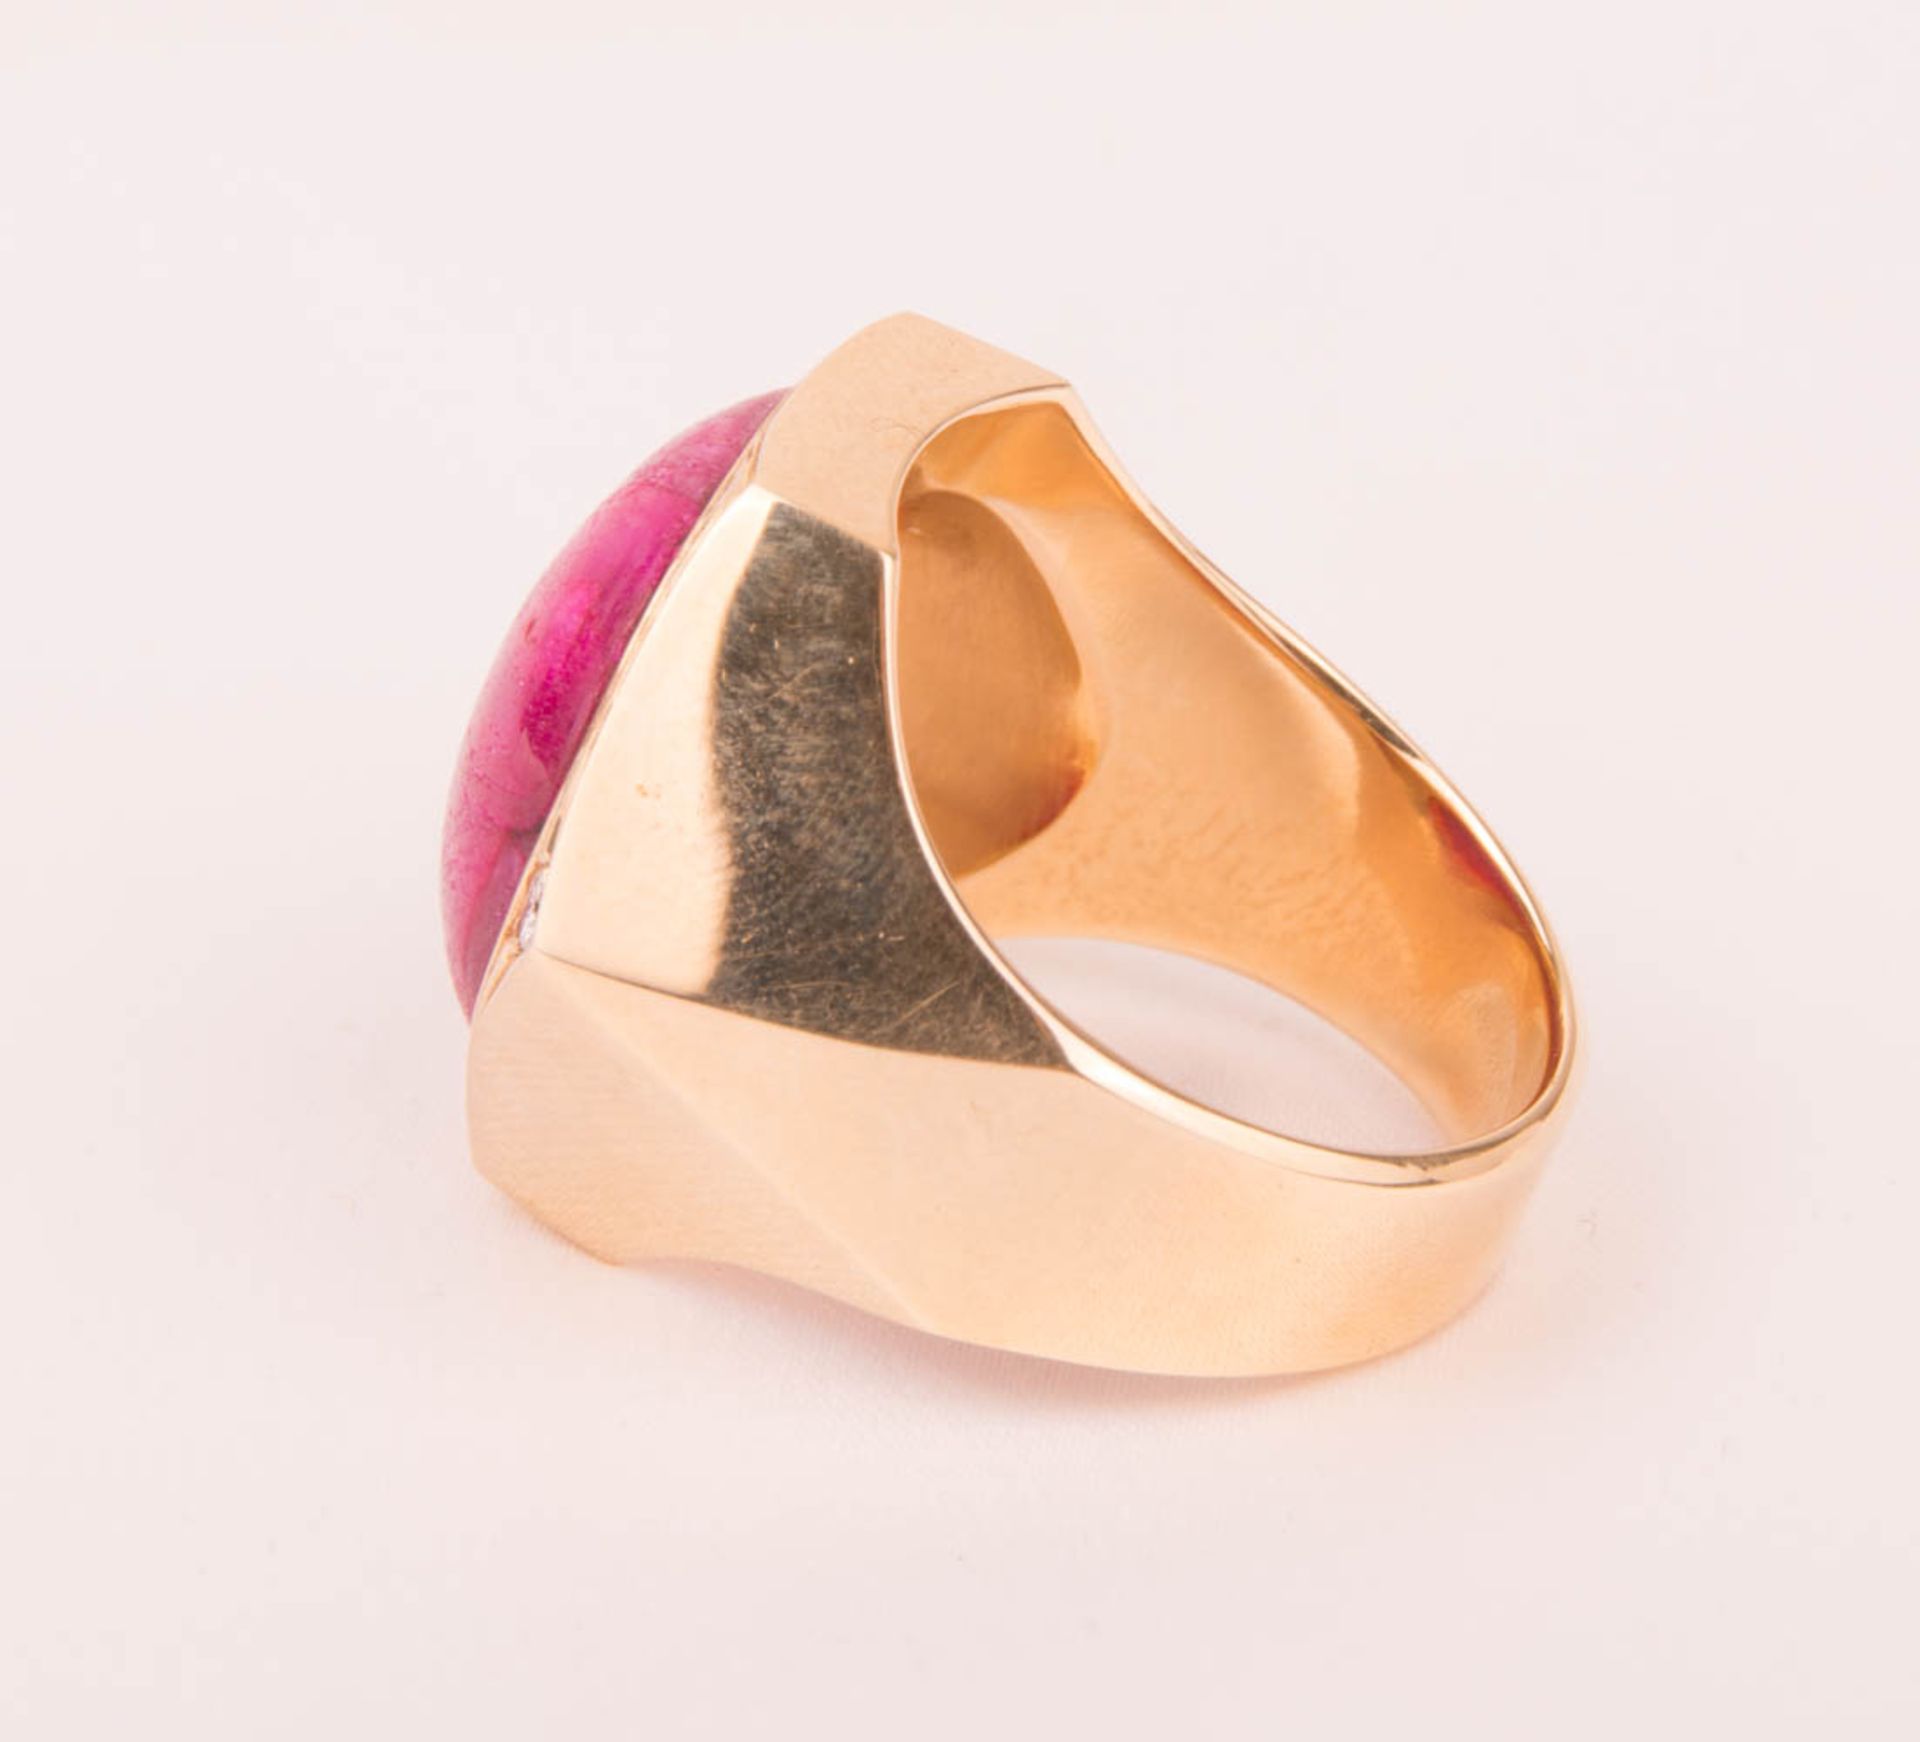 Beeindruckend breiter Ring mit großem Rubin und Diamanten, 585er Gelbgold. - Bild 3 aus 5